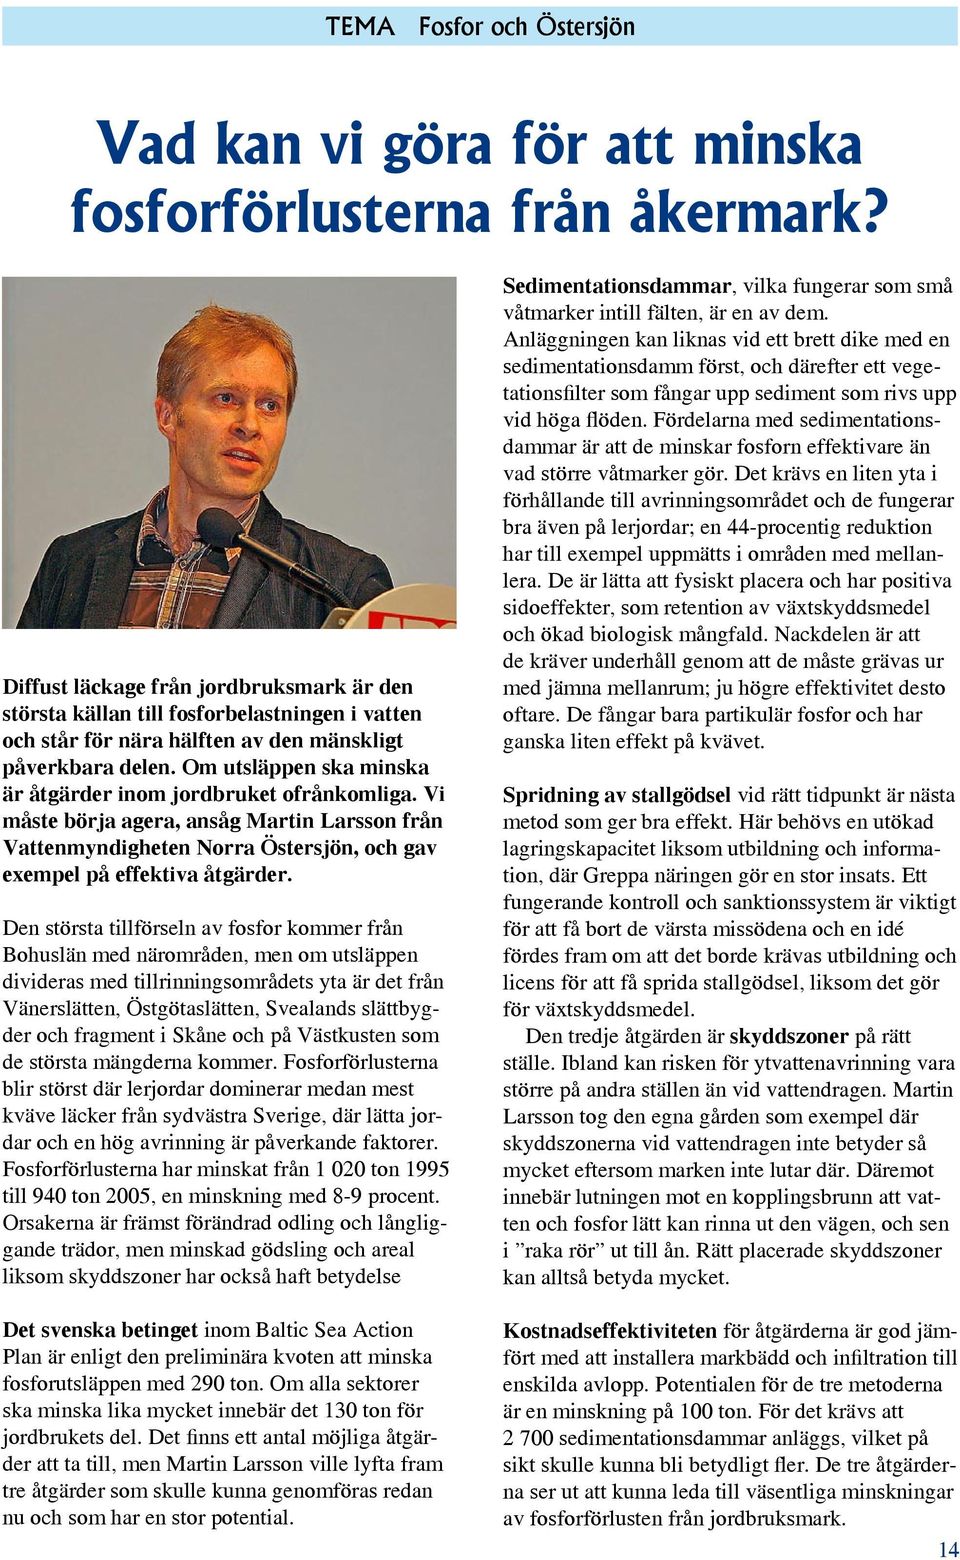 Om utsläppen ska minska är åtgärder inom jordbruket ofrånkomliga. Vi måste börja agera, ansåg Martin Larsson från Vattenmyndigheten Norra Östersjön, och gav exempel på effektiva åtgärder.